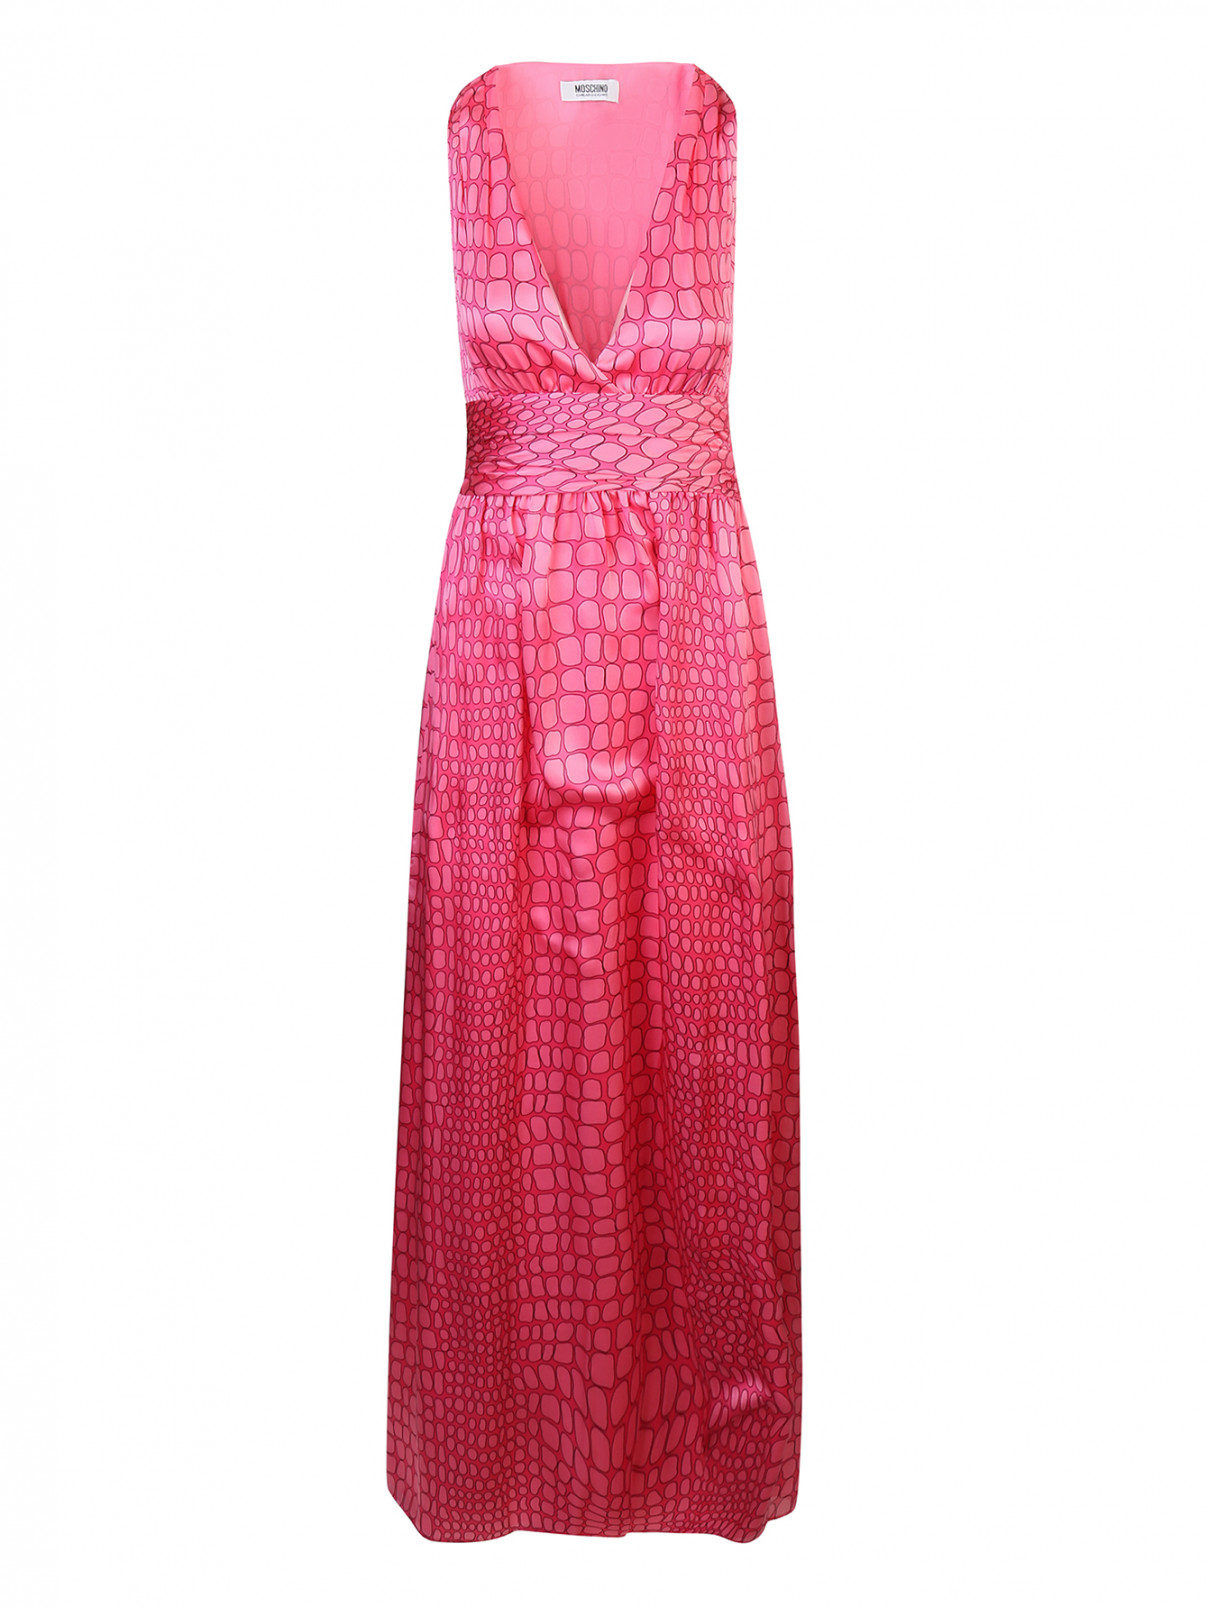 Платье-футляр из хлопка с шелком с растительным узором Moschino Cheap&Chic  –  Общий вид  – Цвет:  Розовый